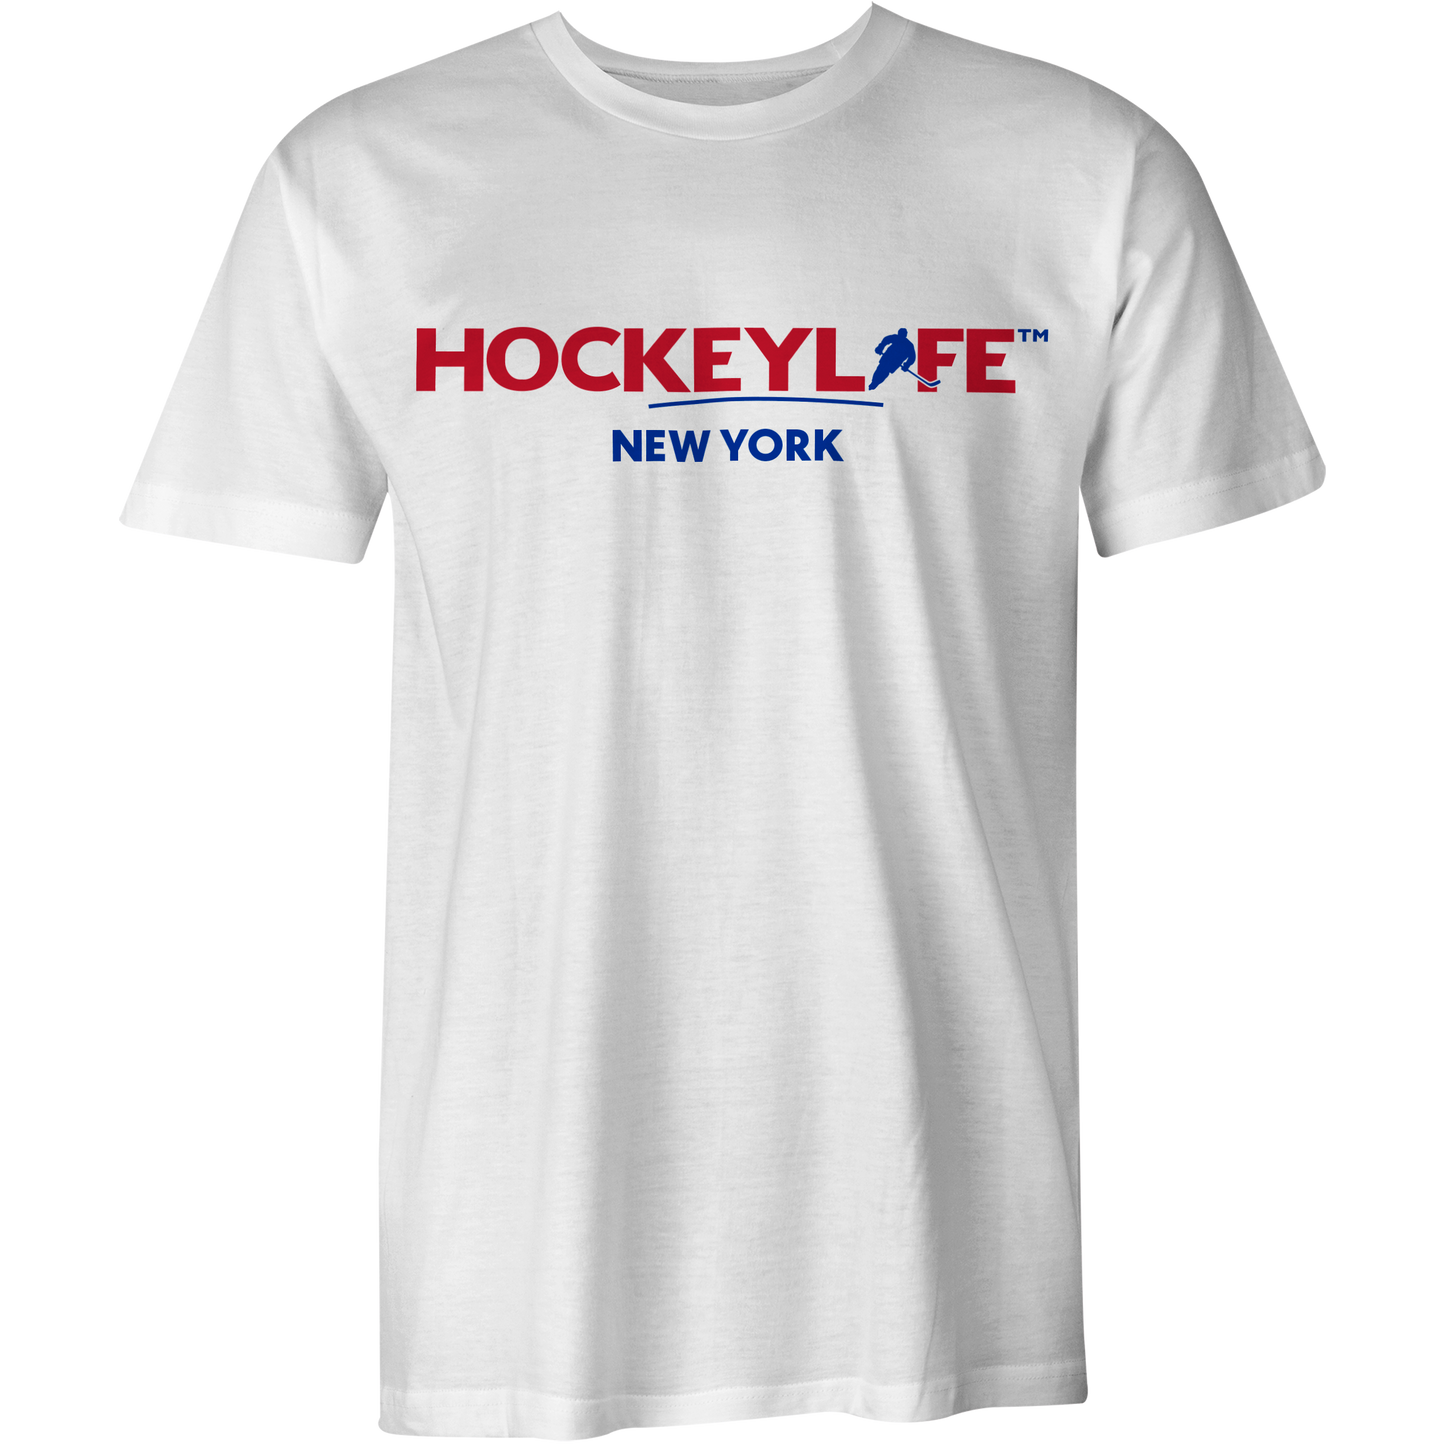 HockeyLife New York Tee Shirt